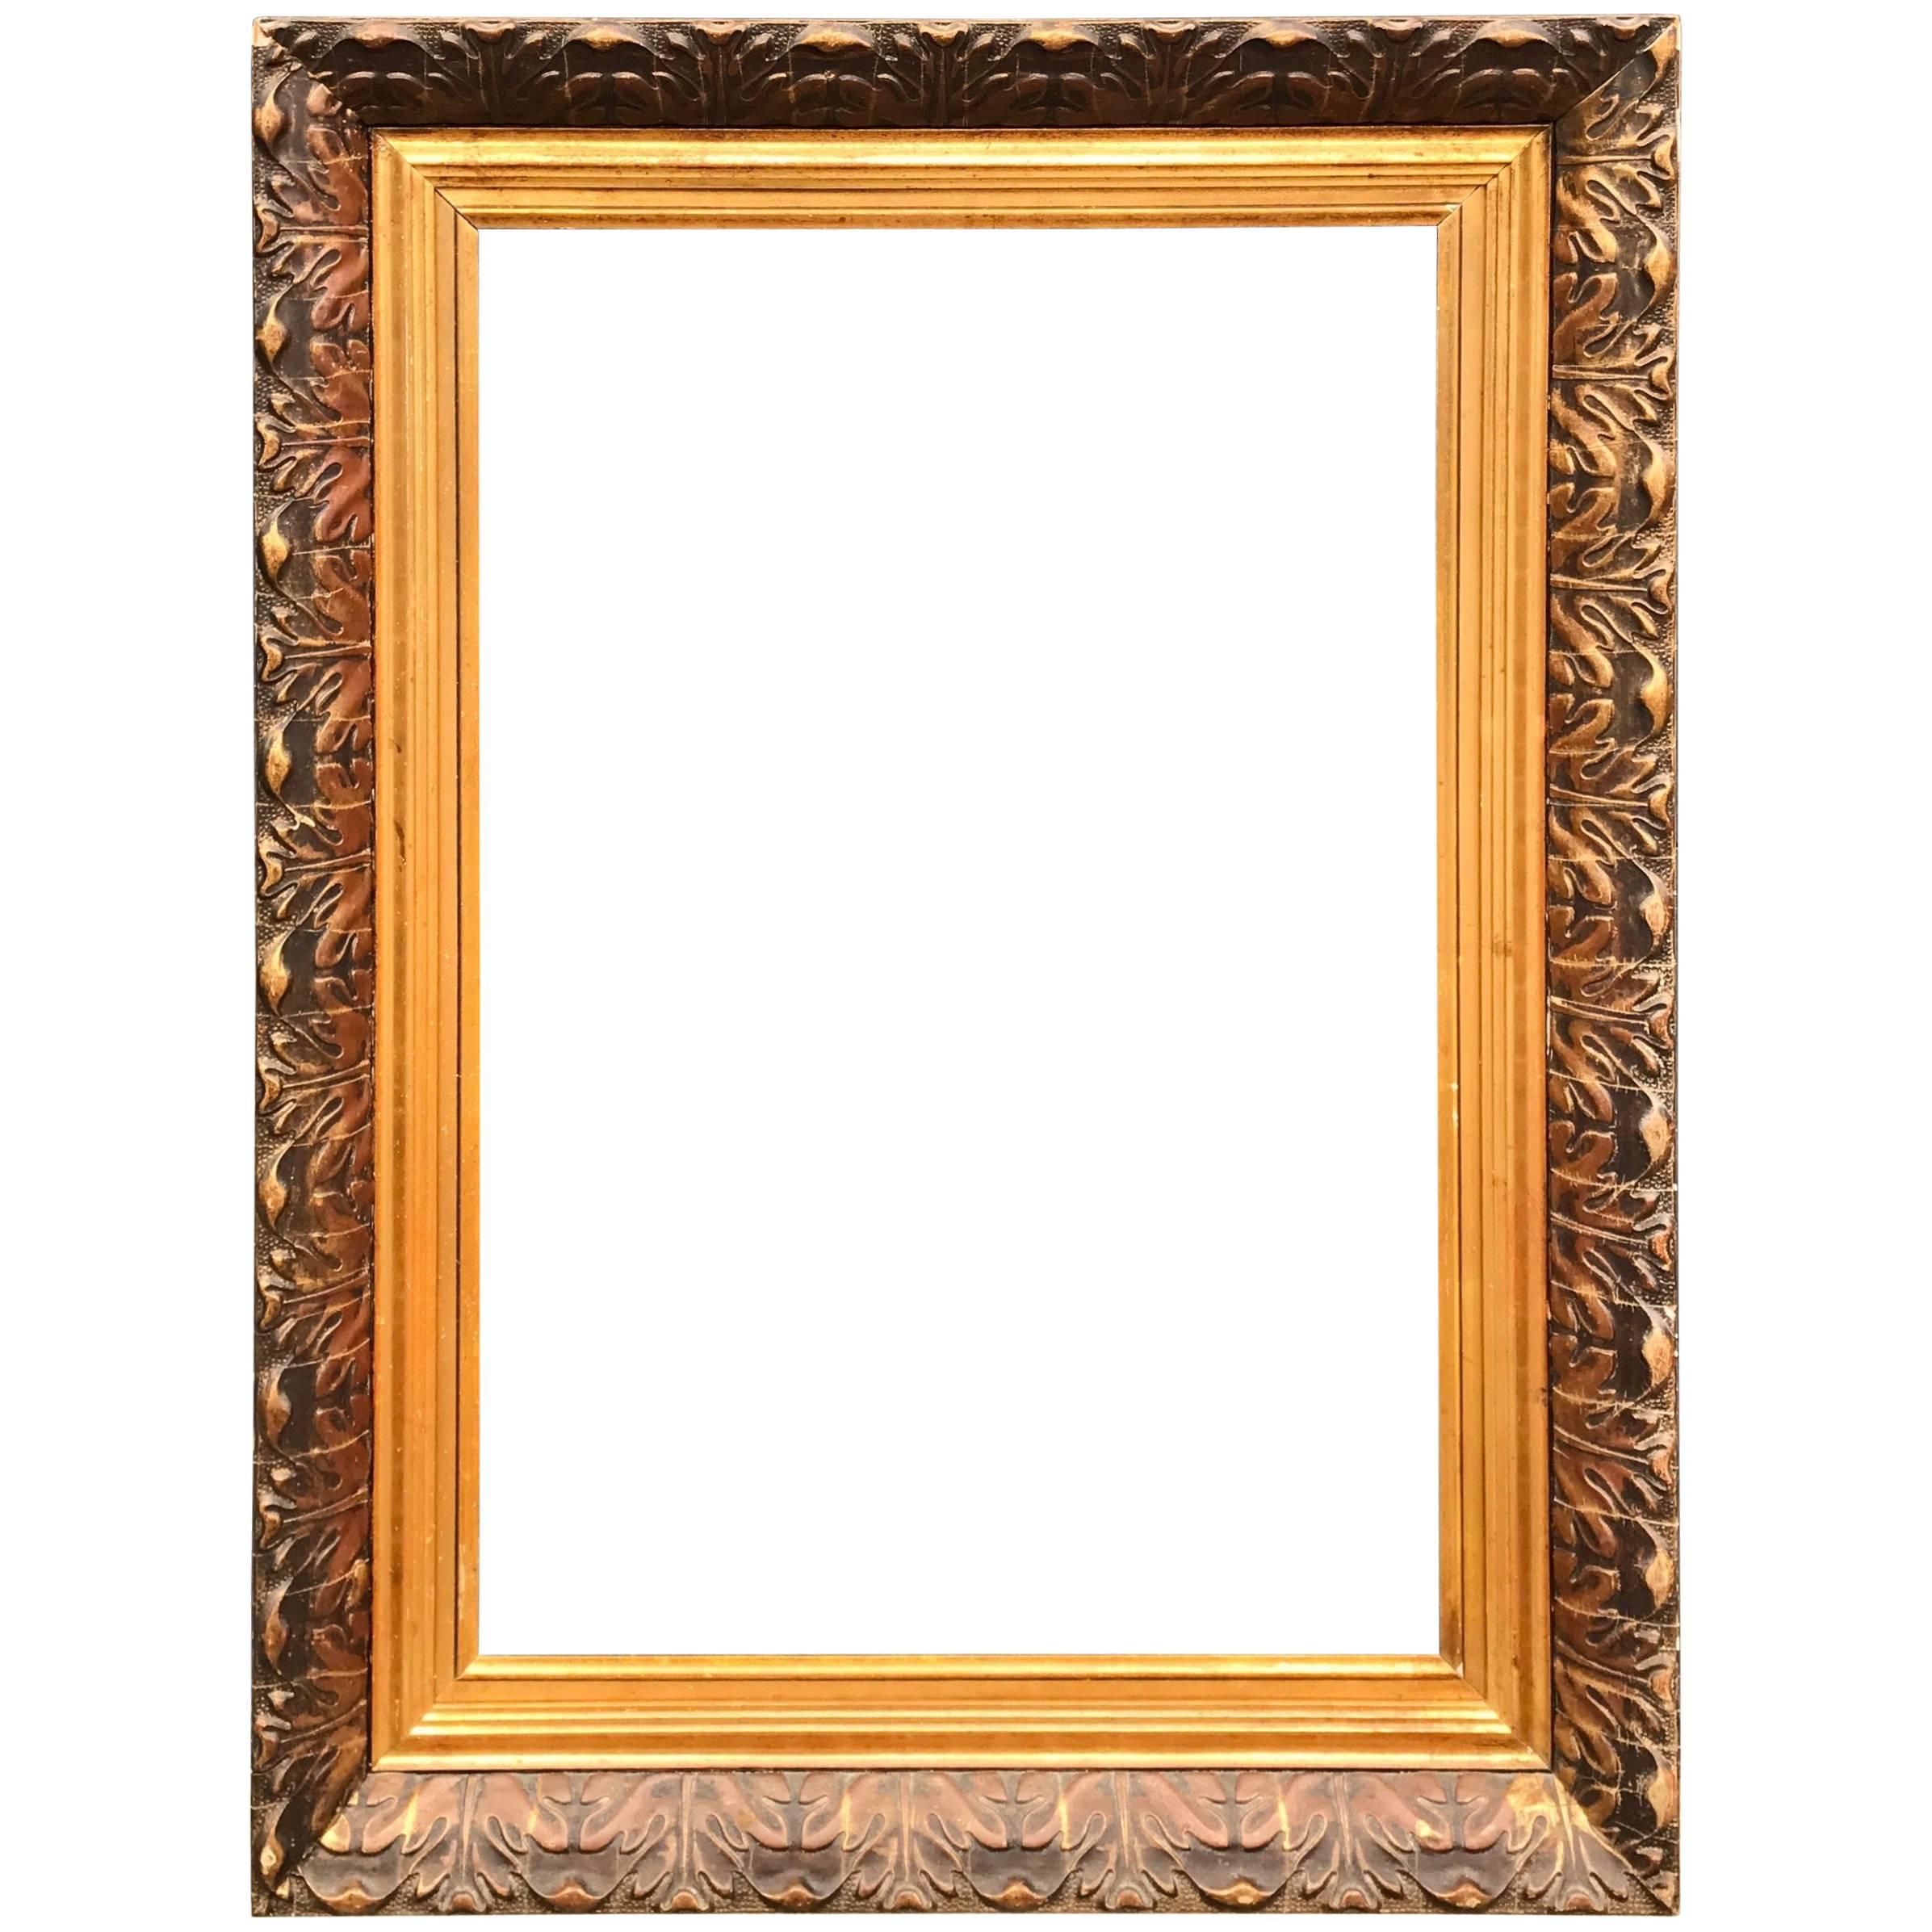 Vergoldetes antikes Gemälde oder Spiegelrahmen mit Blattmotiven, dekorative und dekorative Vergoldung